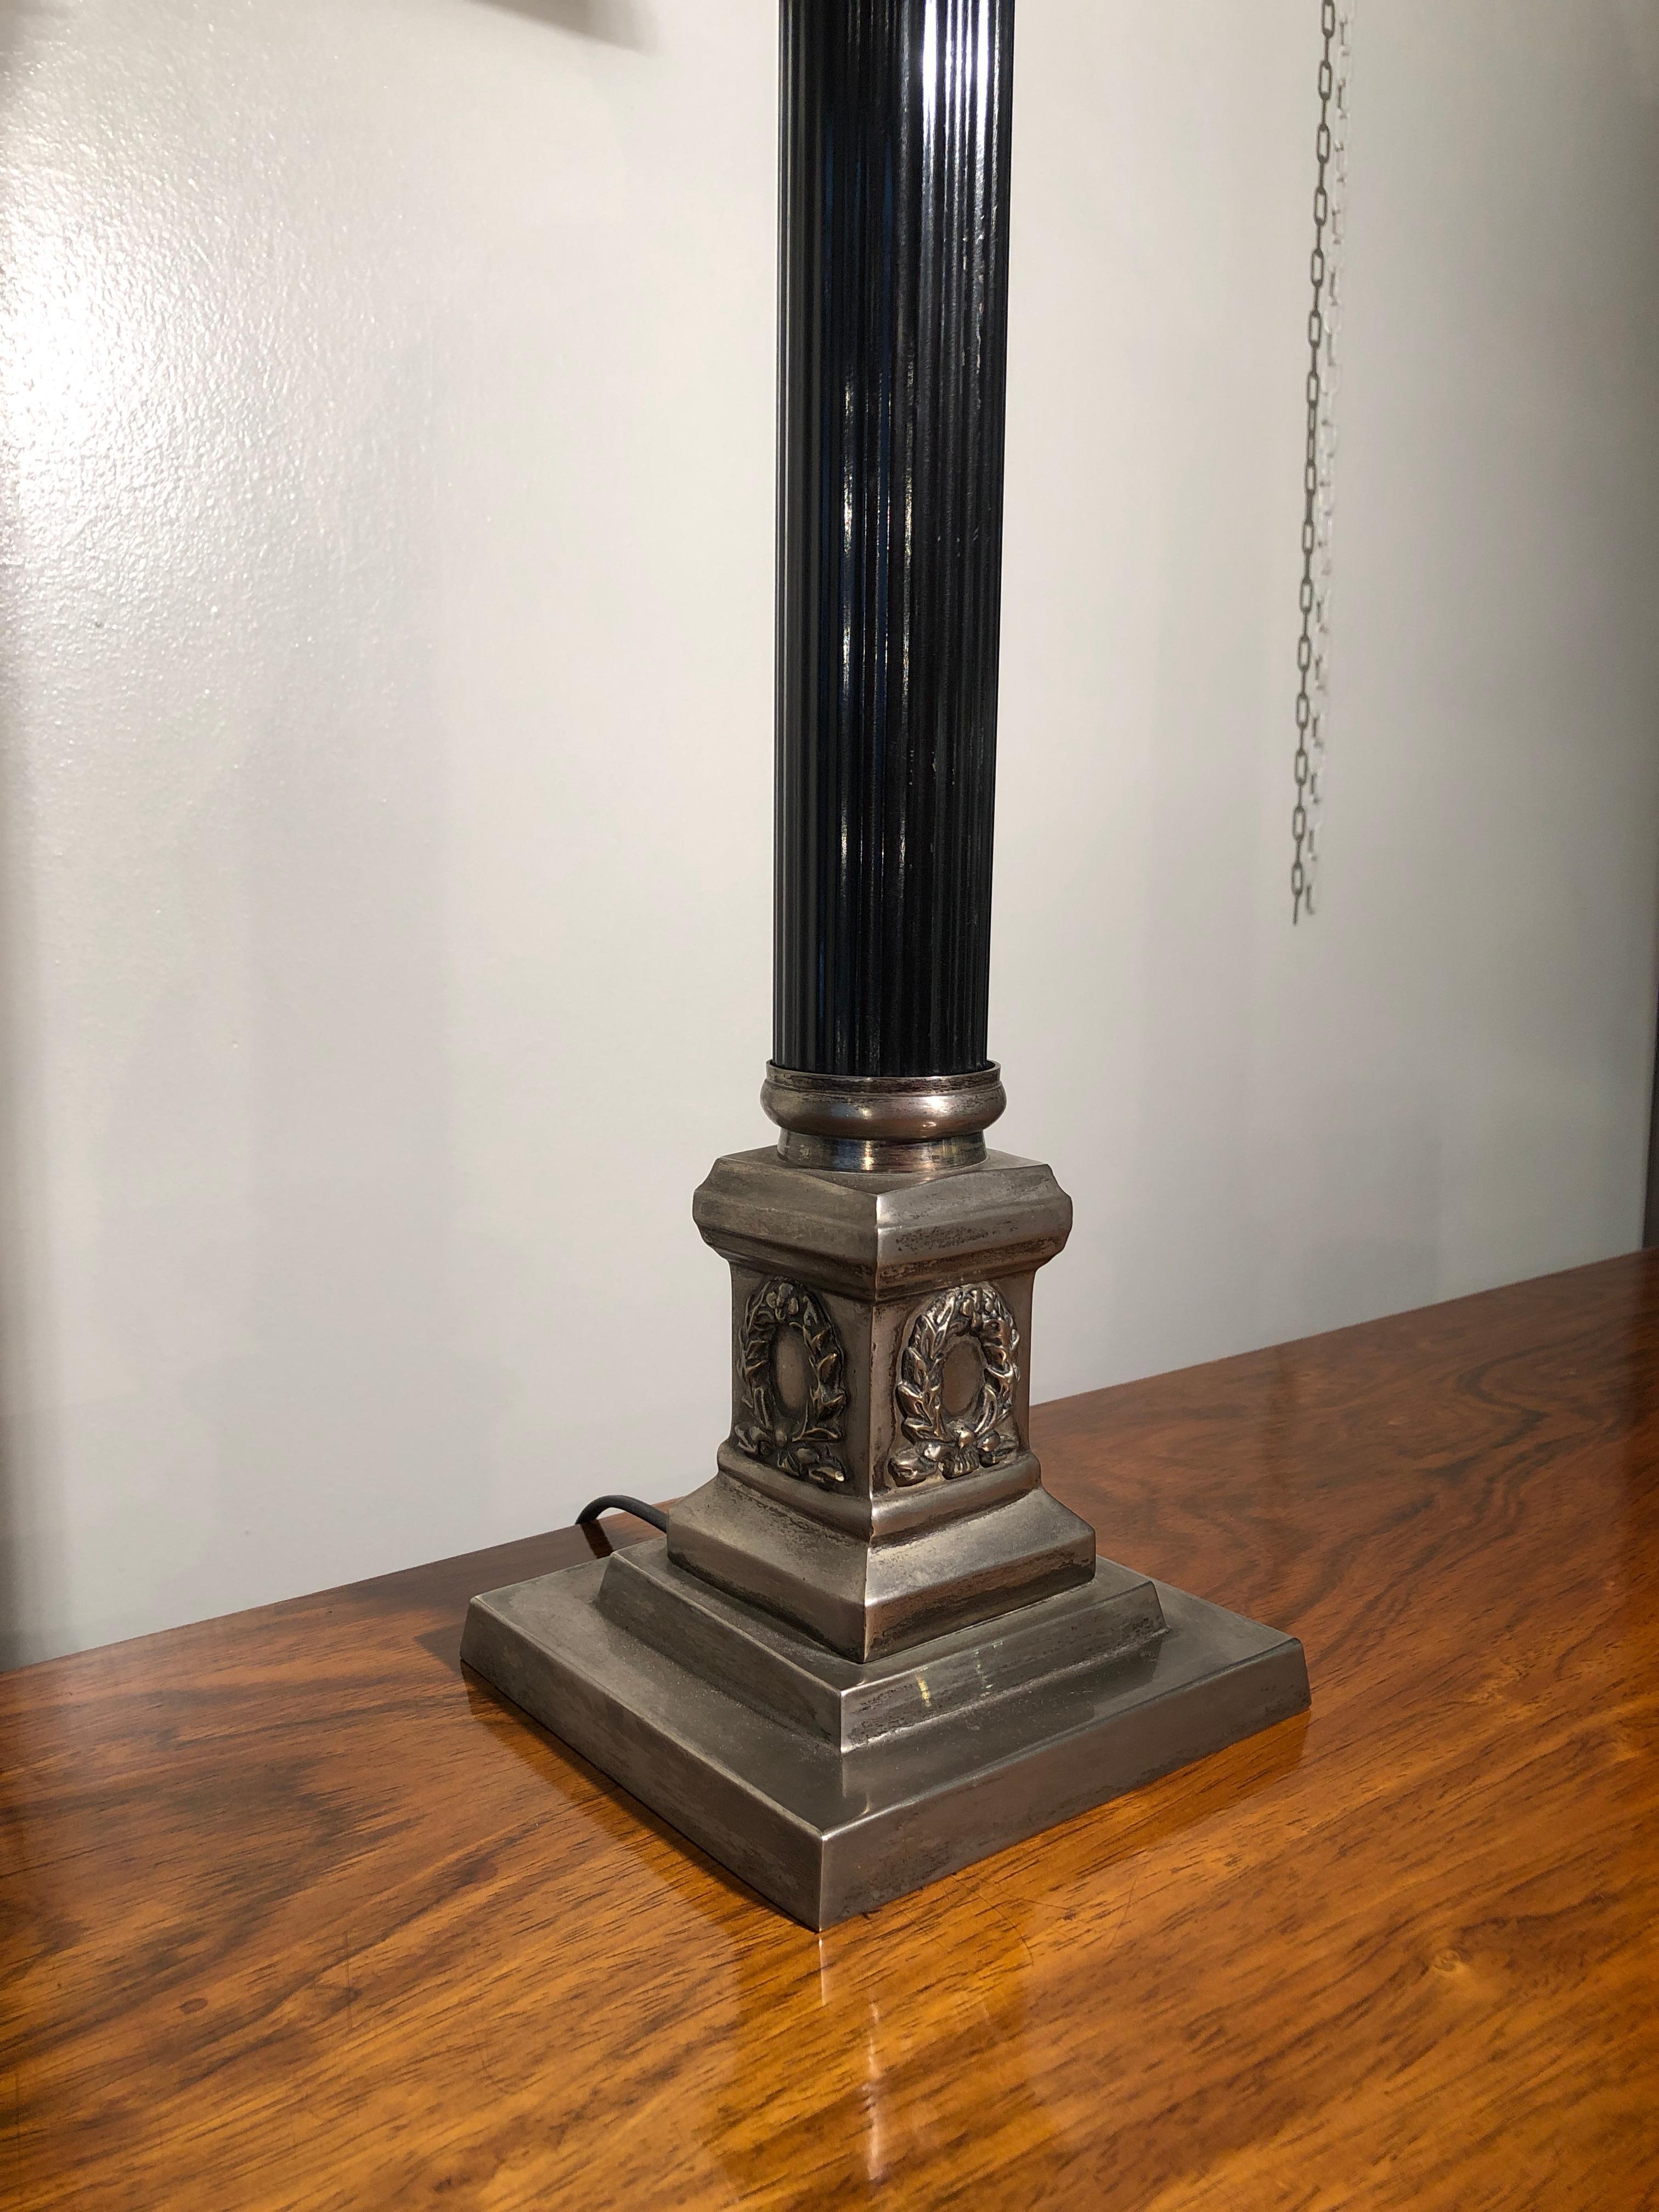 Tischlampe im Empire-Stil aus versilbertem und schwarz graviertem Metall, Frankreich, Anfang 20. Jahrhundert, 1930er Jahre

Auf den Bildern sehen Sie zwei Lampen, aber nur noch eine.

Tischleuchte mit schwarz lackiertem Metallkörper und fein